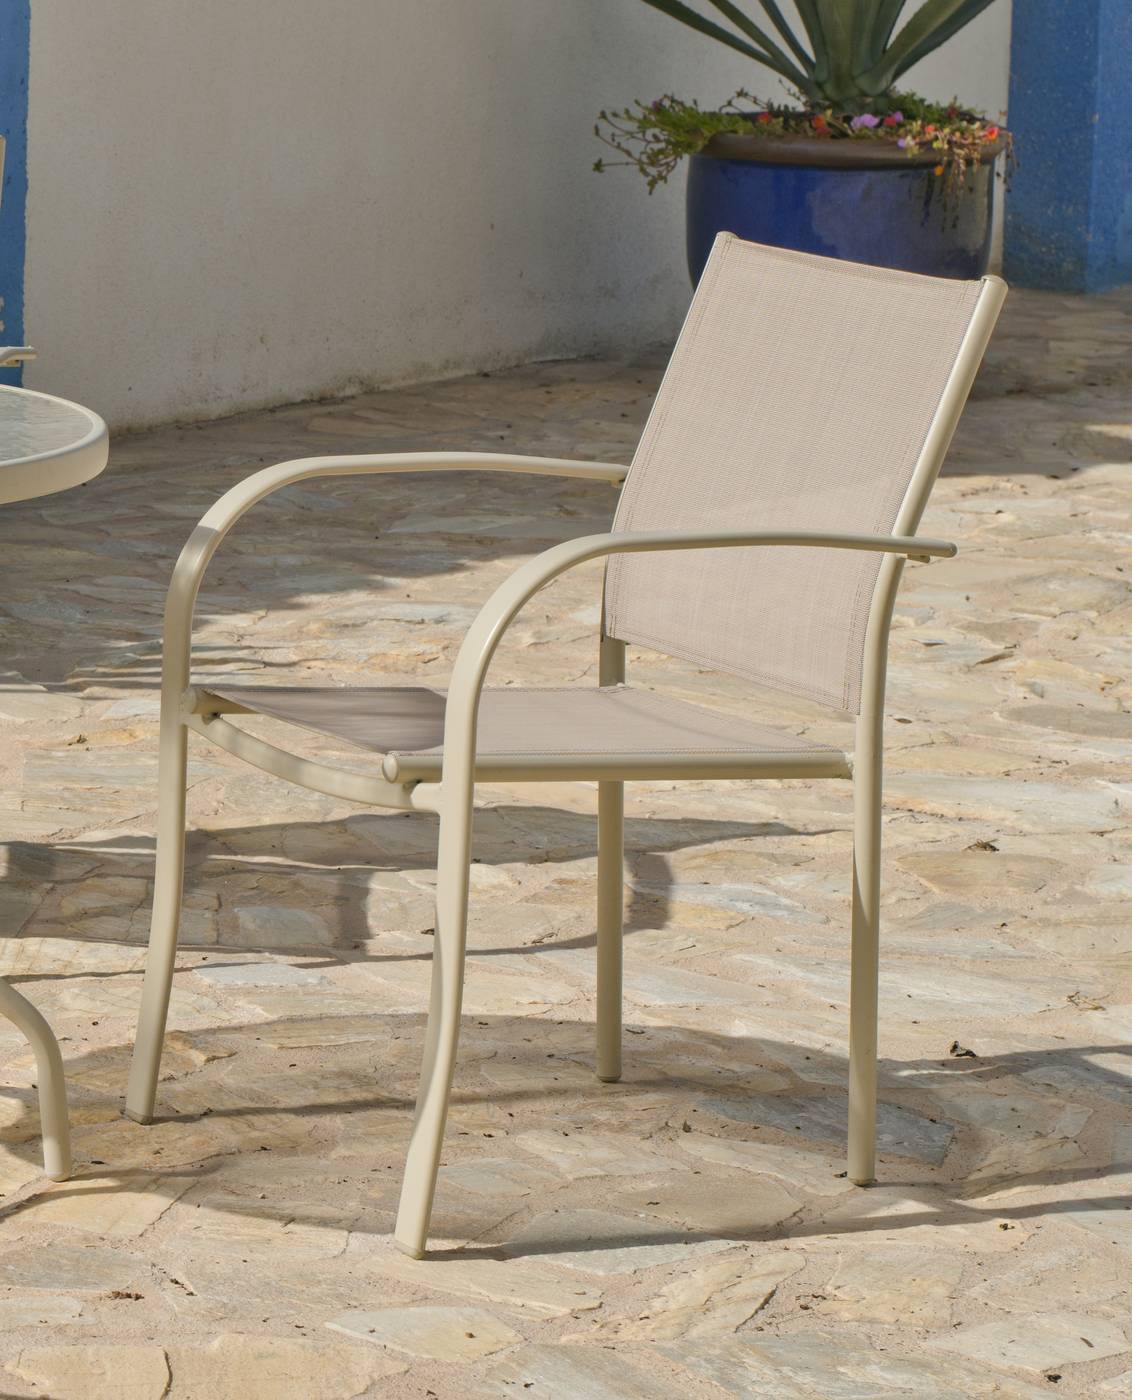 Conjunto Acero Castilla 150-4 - Conjunto de acero color champagne: mesa rectangular de 150 cm, con tablero de cristal templado + 4 sillones de acero y textilen